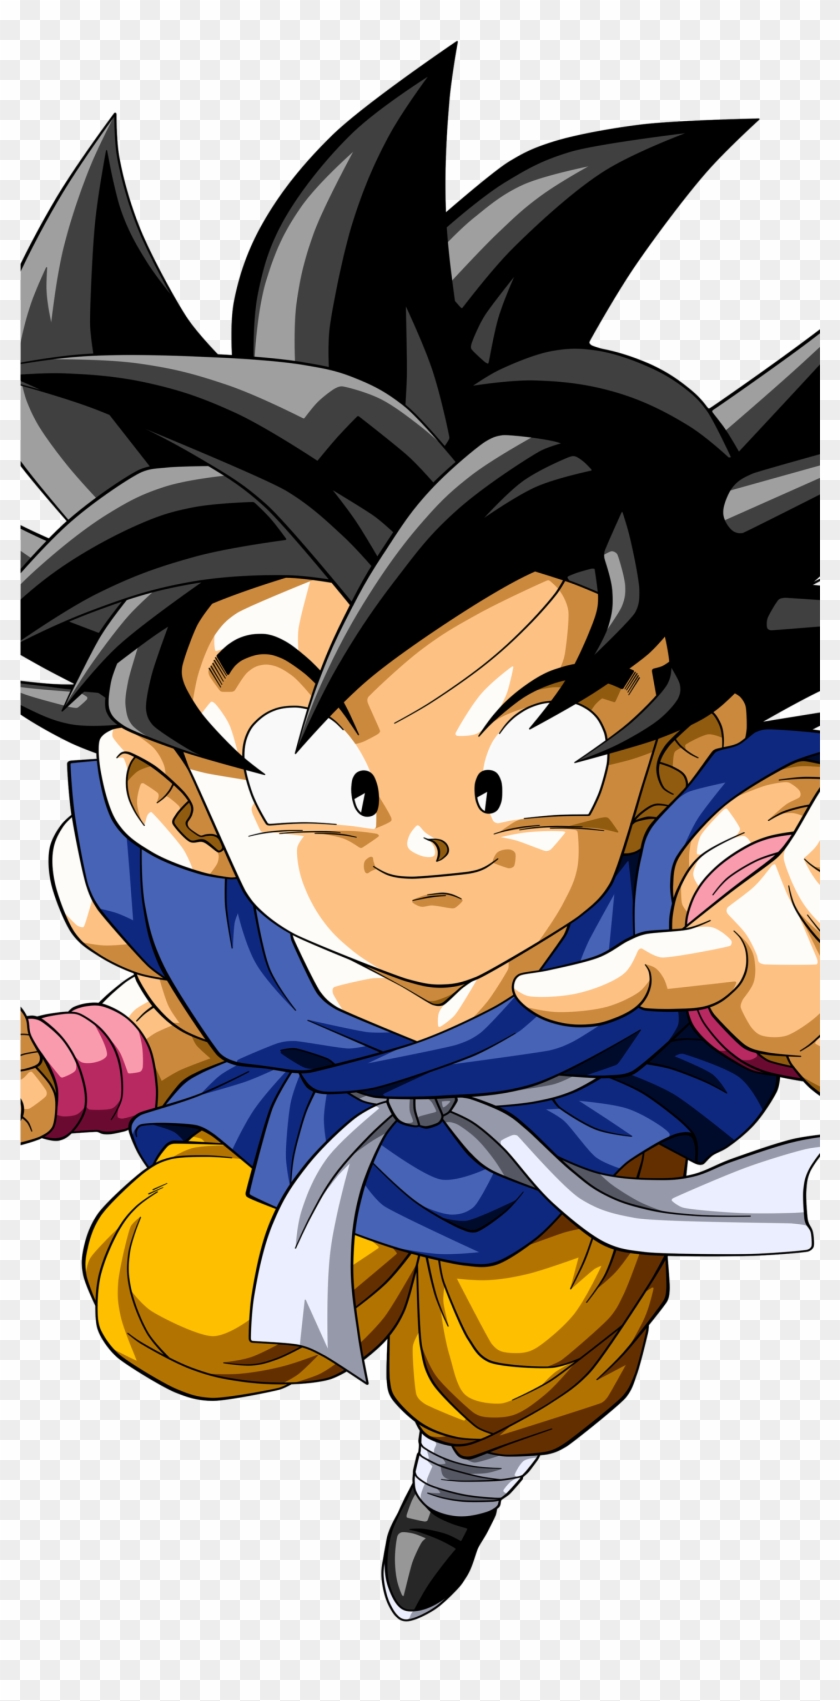 Kid Goku Anime / Dragon Ball Gt Mobile Wallpaper, HD Png ...